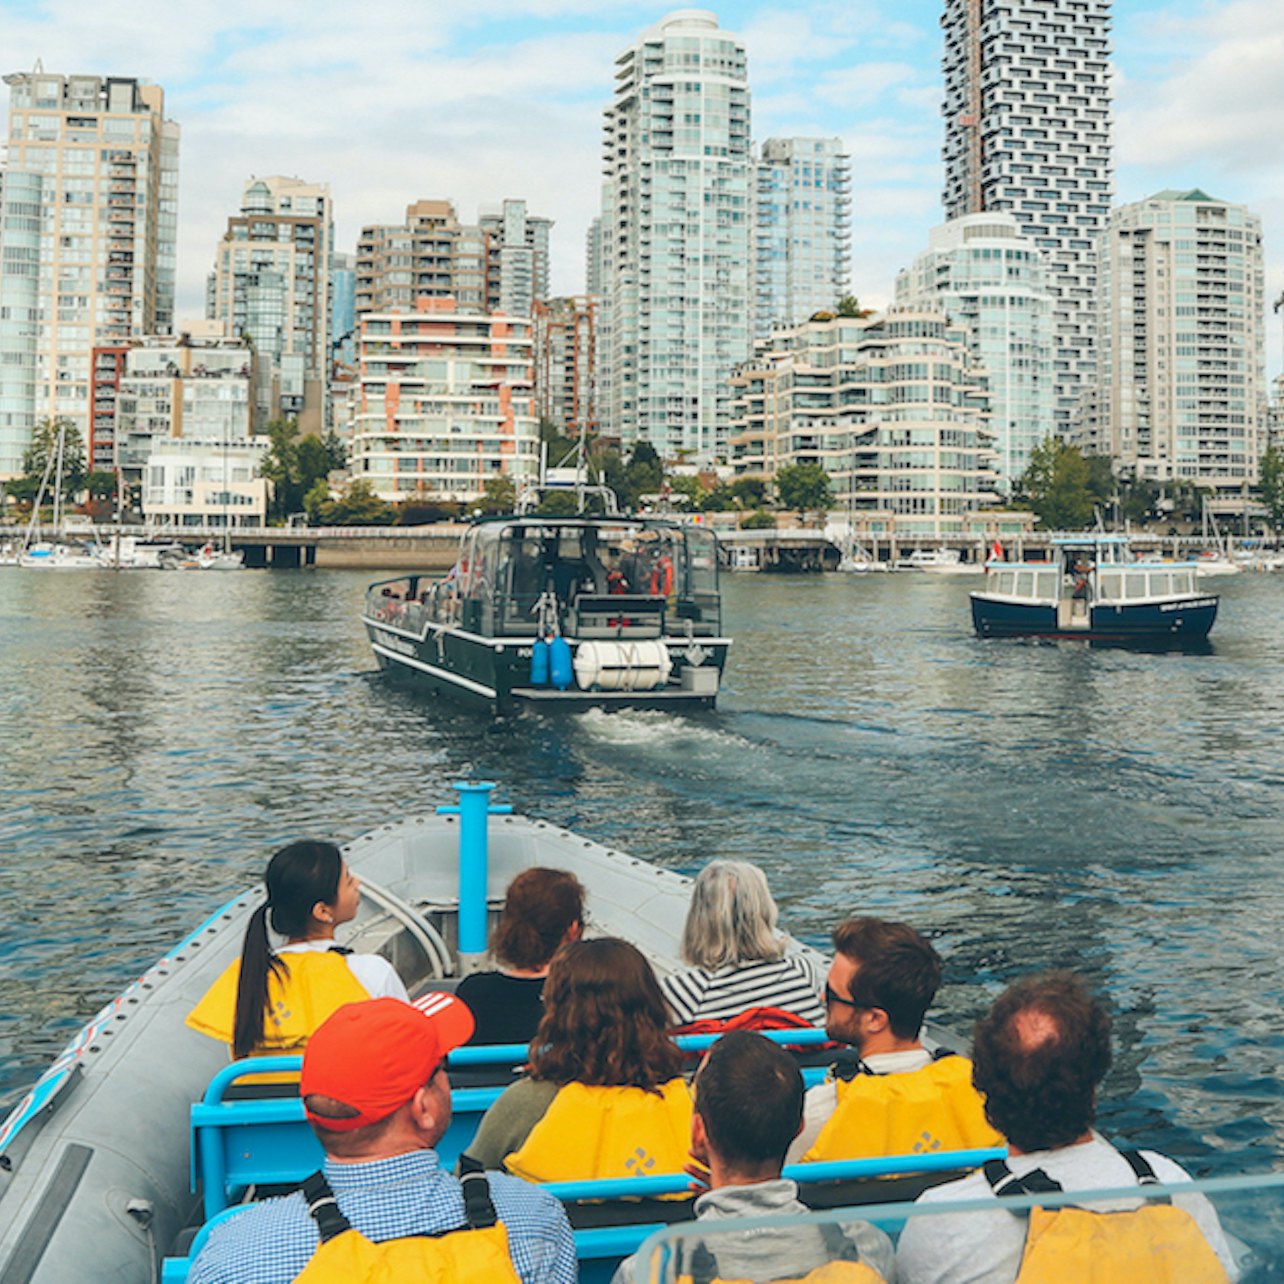 Cruzeiro para ver focas e a cidade a partir de Vancouver - Acomodações em Vancouver